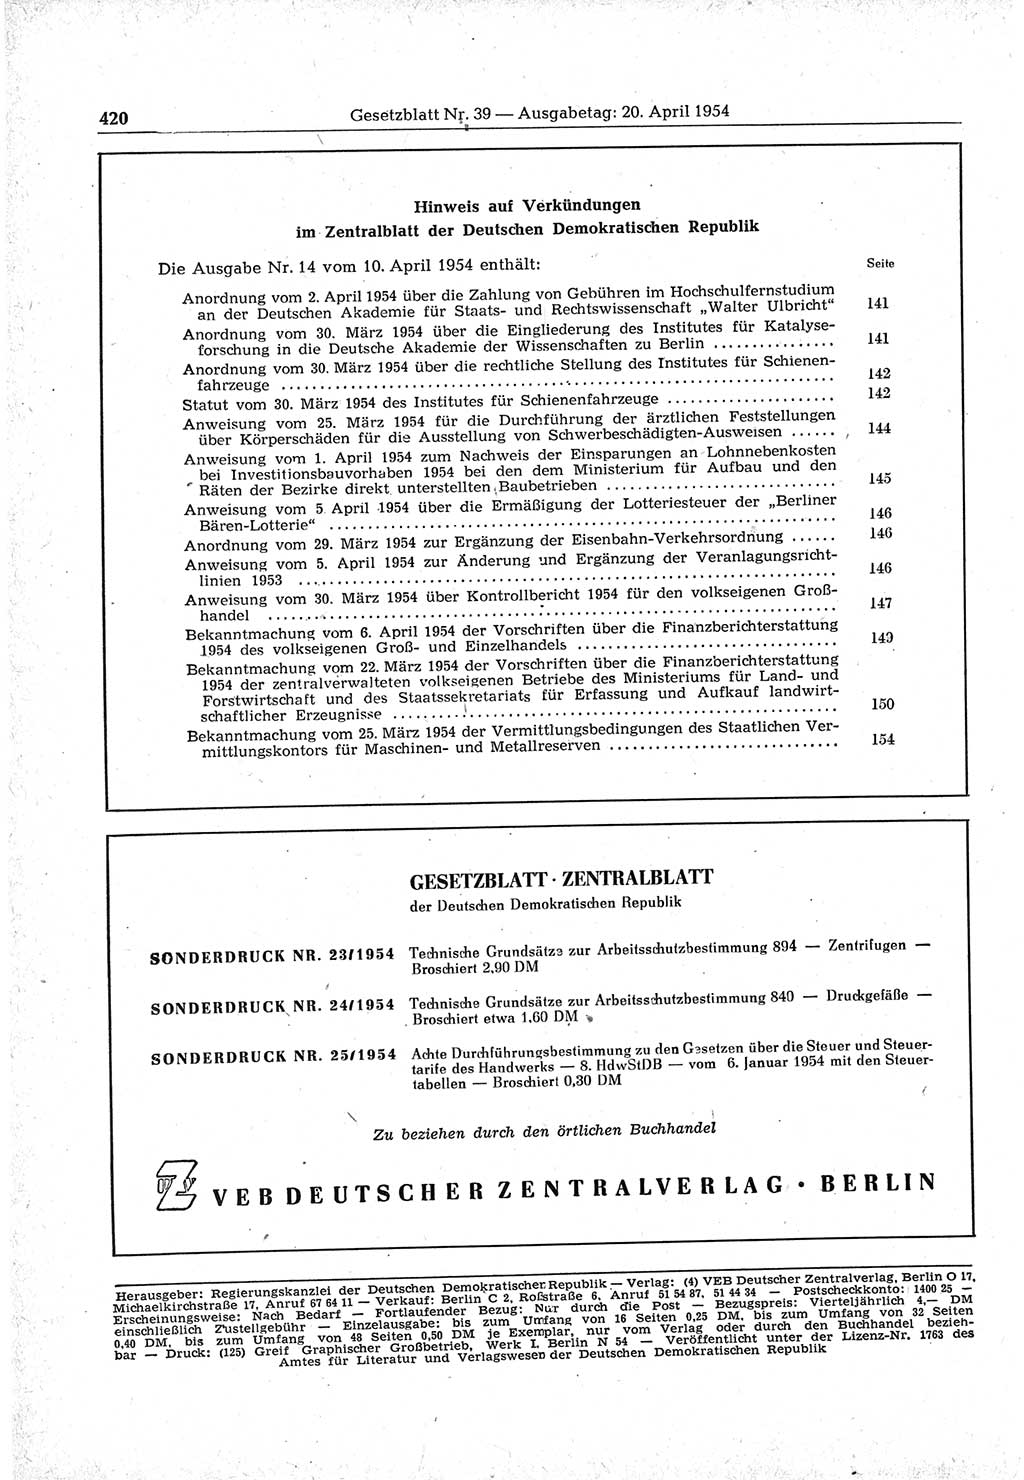 Gesetzblatt (GBl.) der Deutschen Demokratischen Republik (DDR) 1954, Seite 420 (GBl. DDR 1954, S. 420)